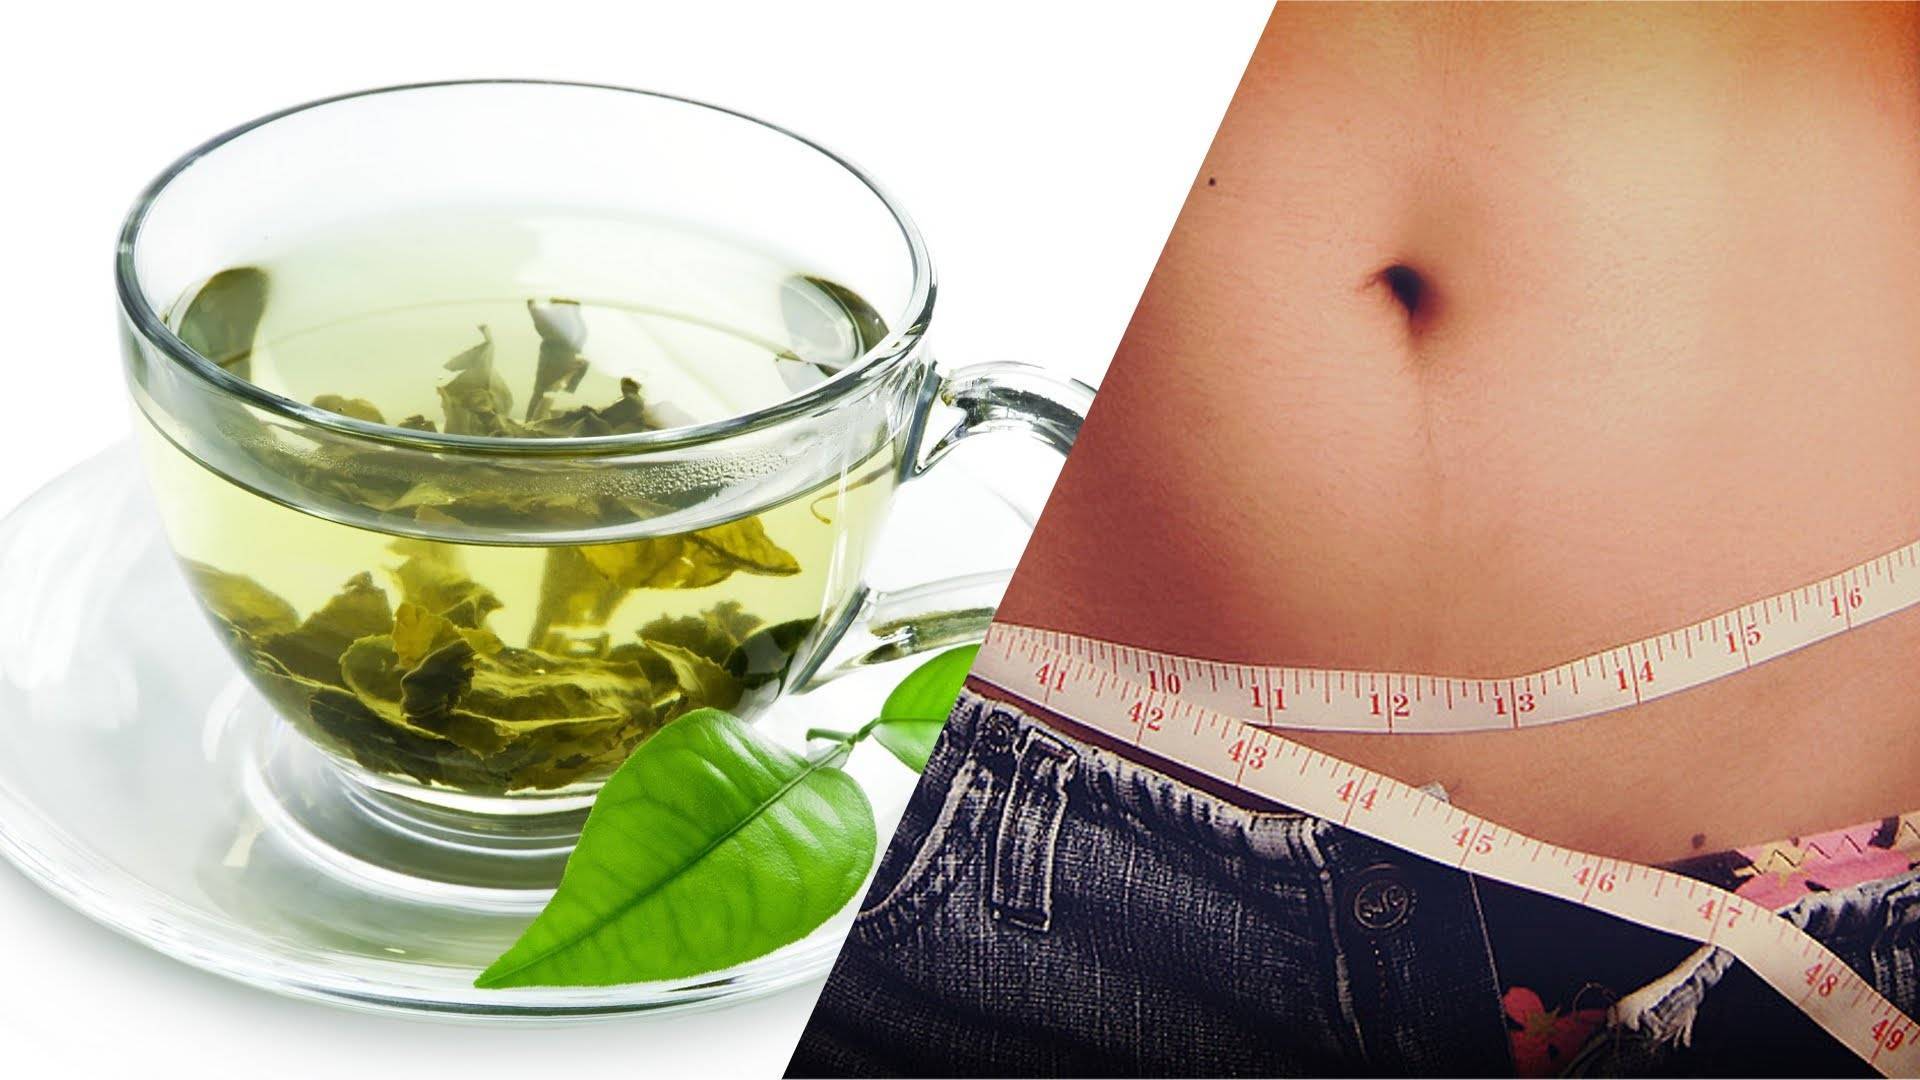 Зеленый чай для эффективного похудения — как заваривать, как пить